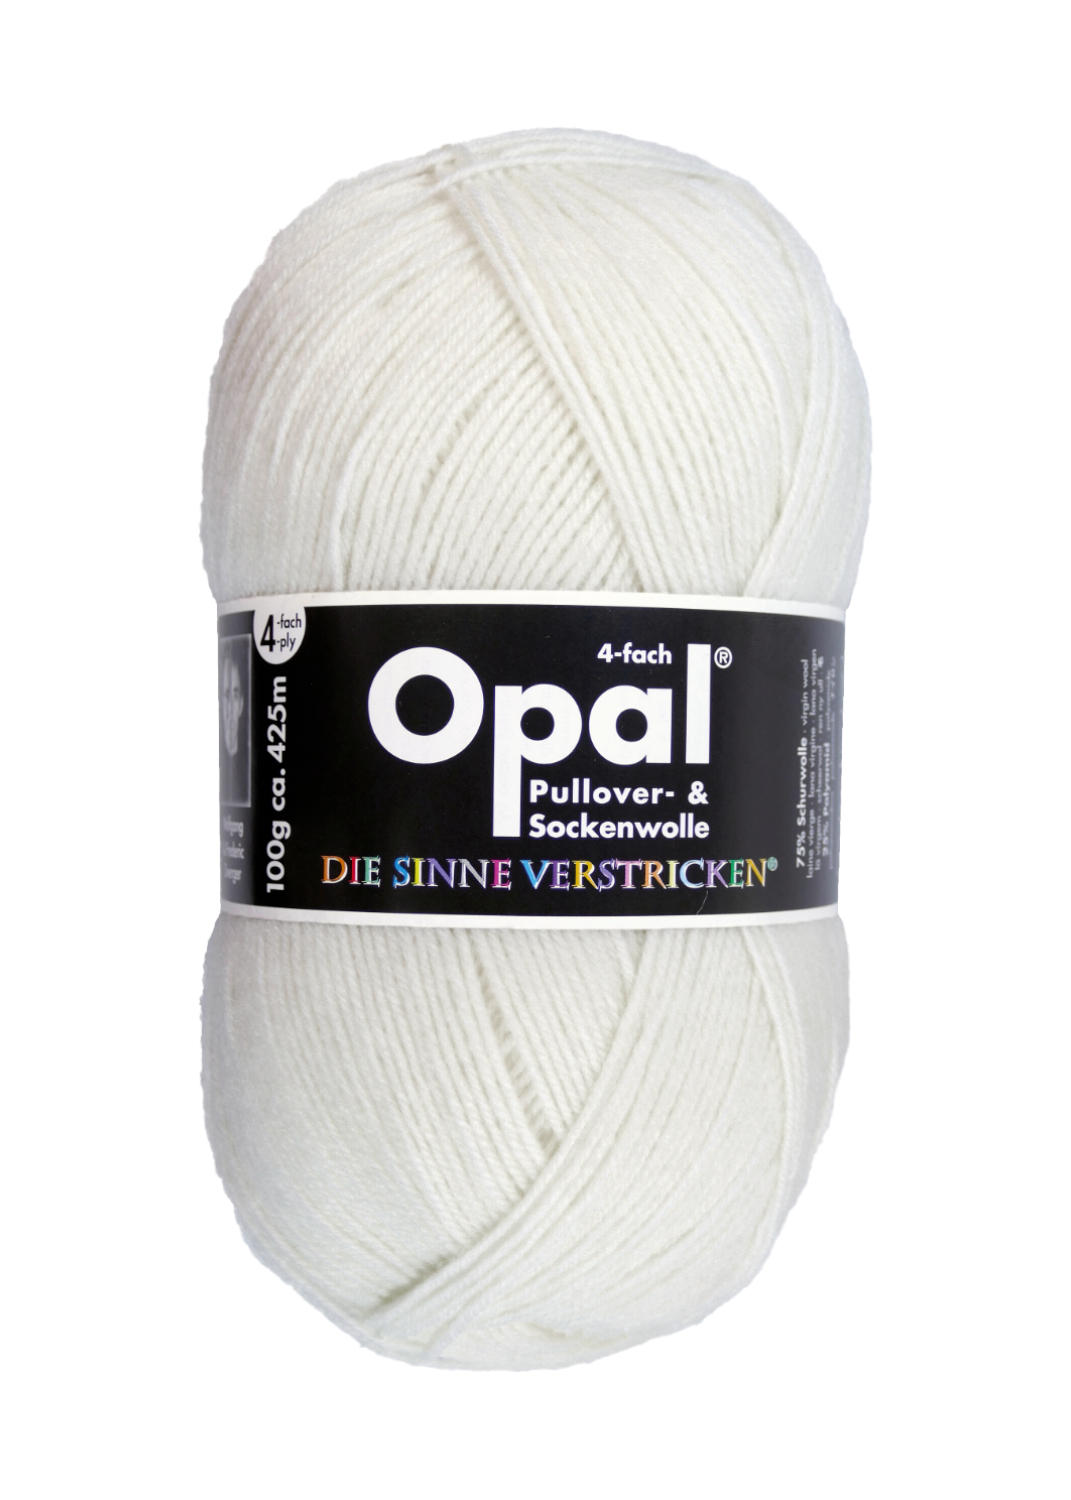 OPAL uni - 4-fach Sockenwolle 2620 - hartweiß